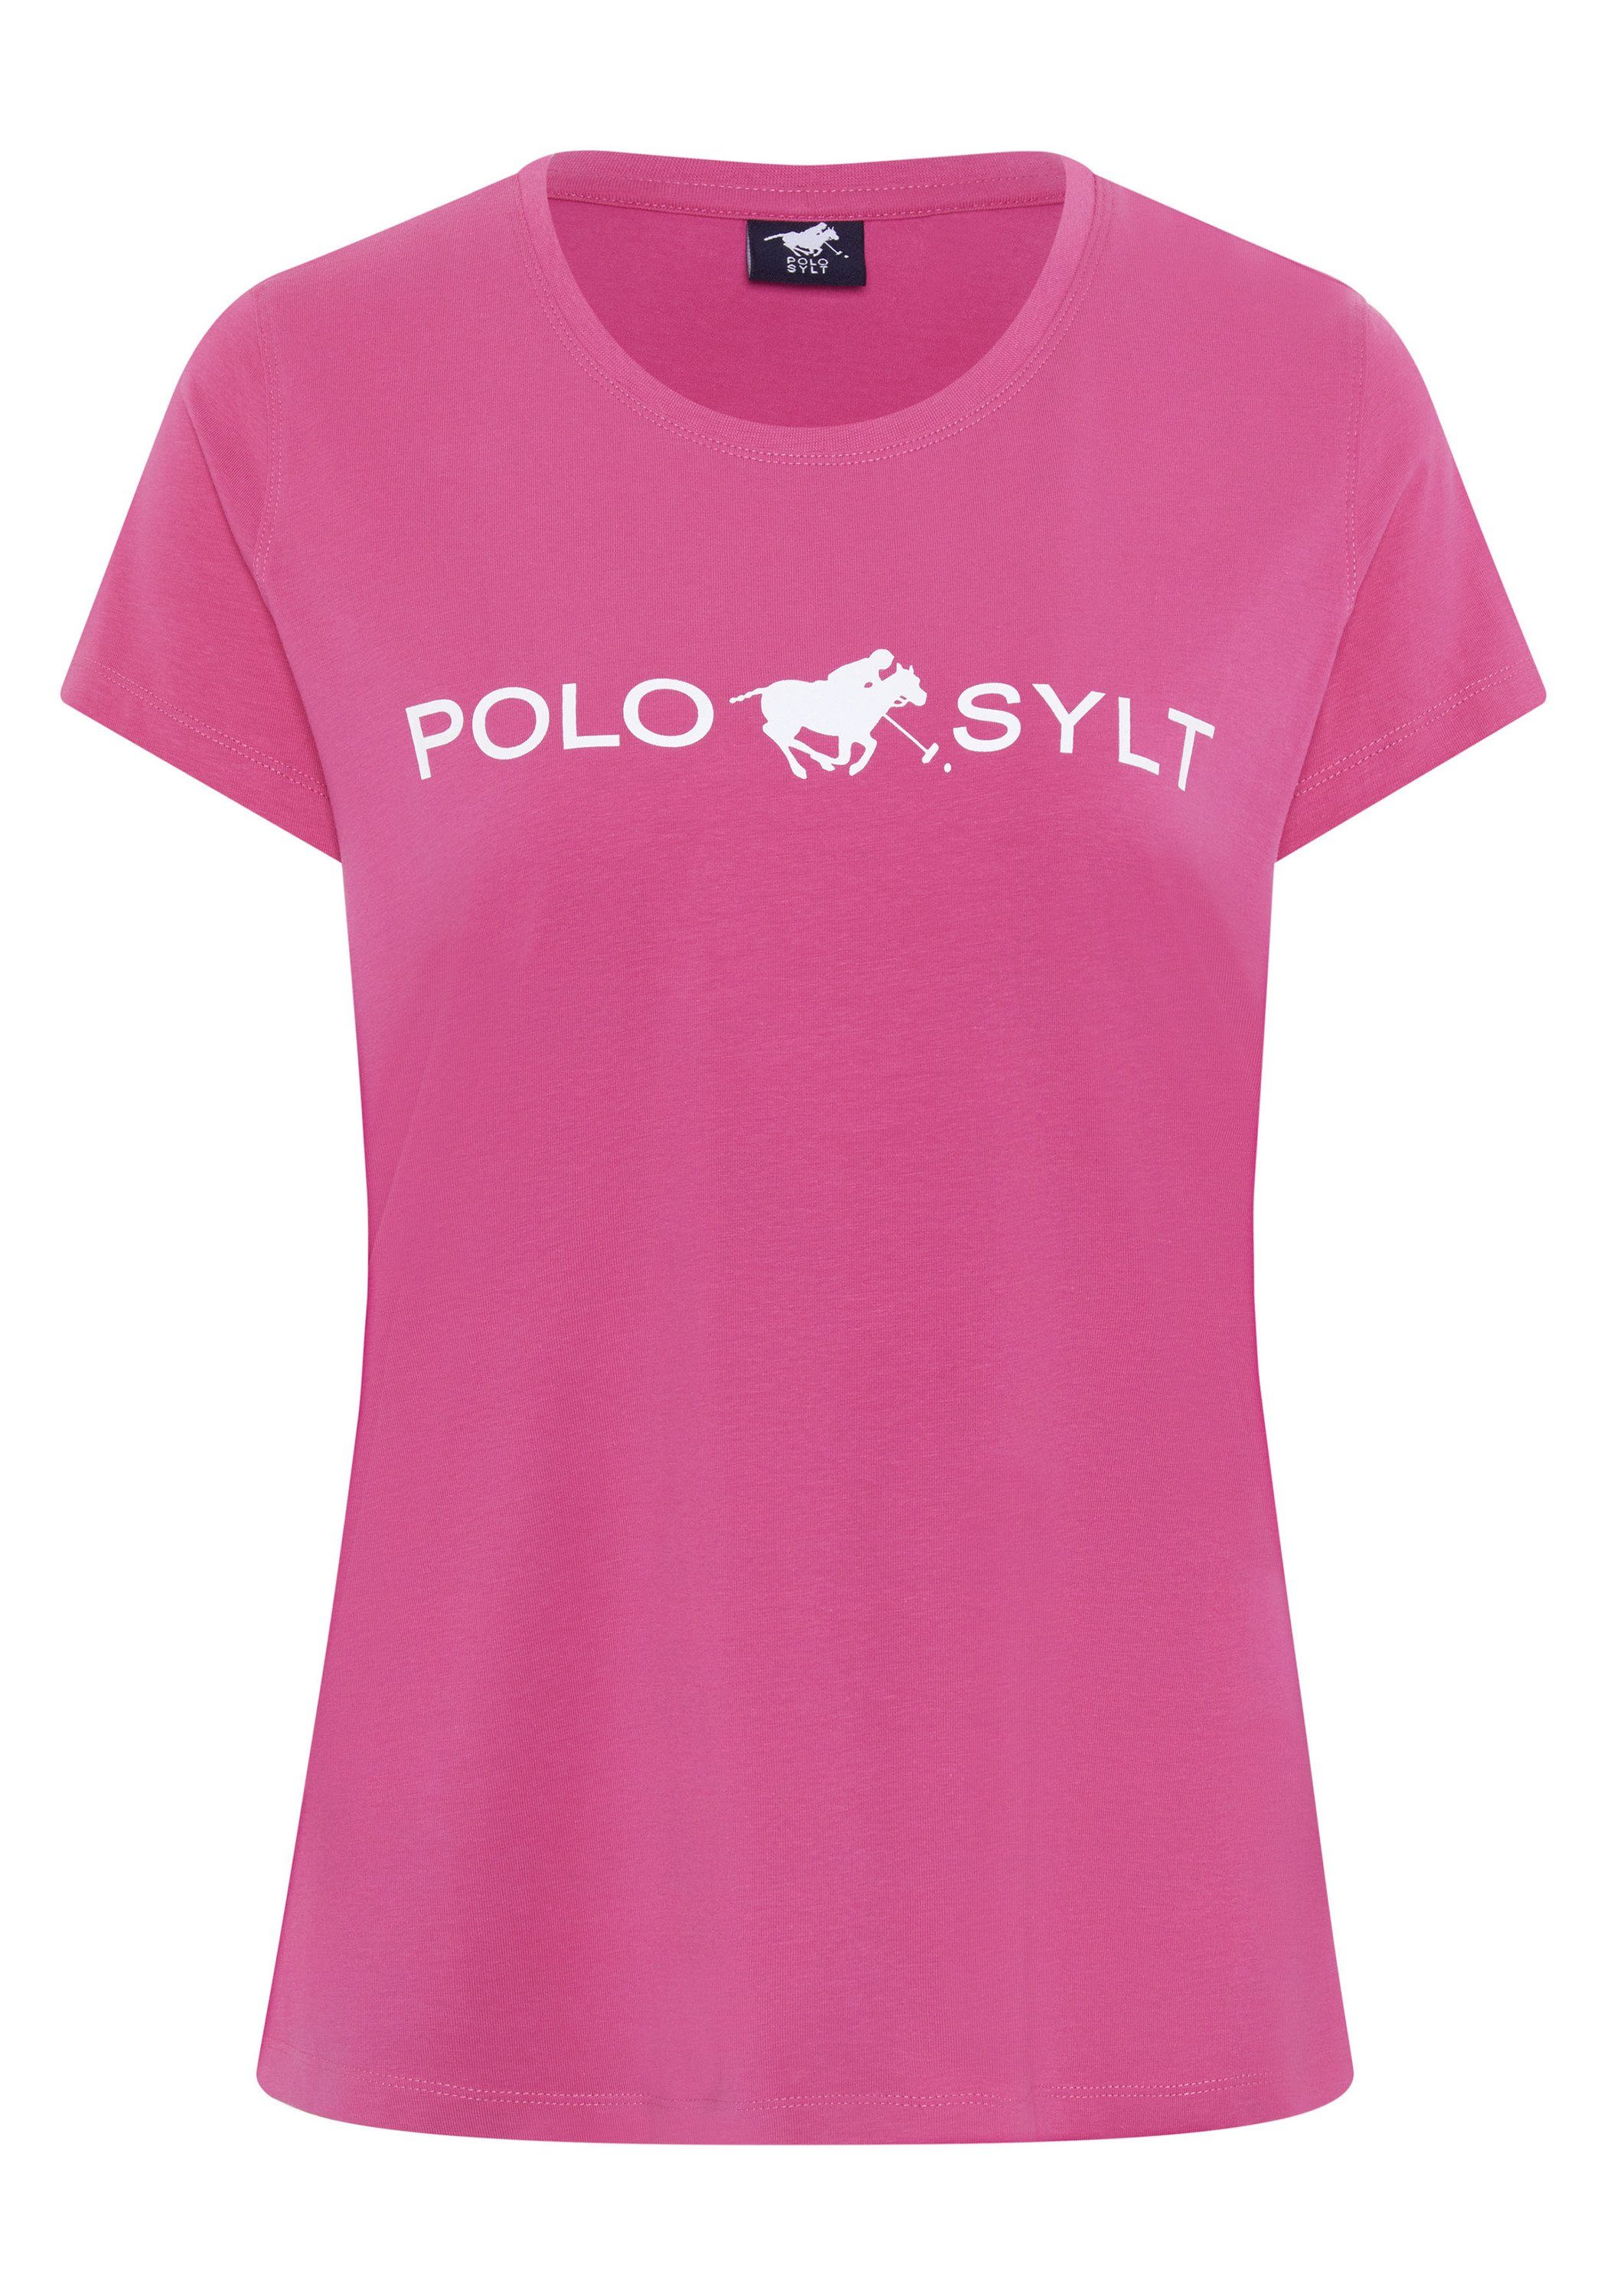 Polo Sylt Langarmshirt mit Labelprint 17-2127 Shocking Pink